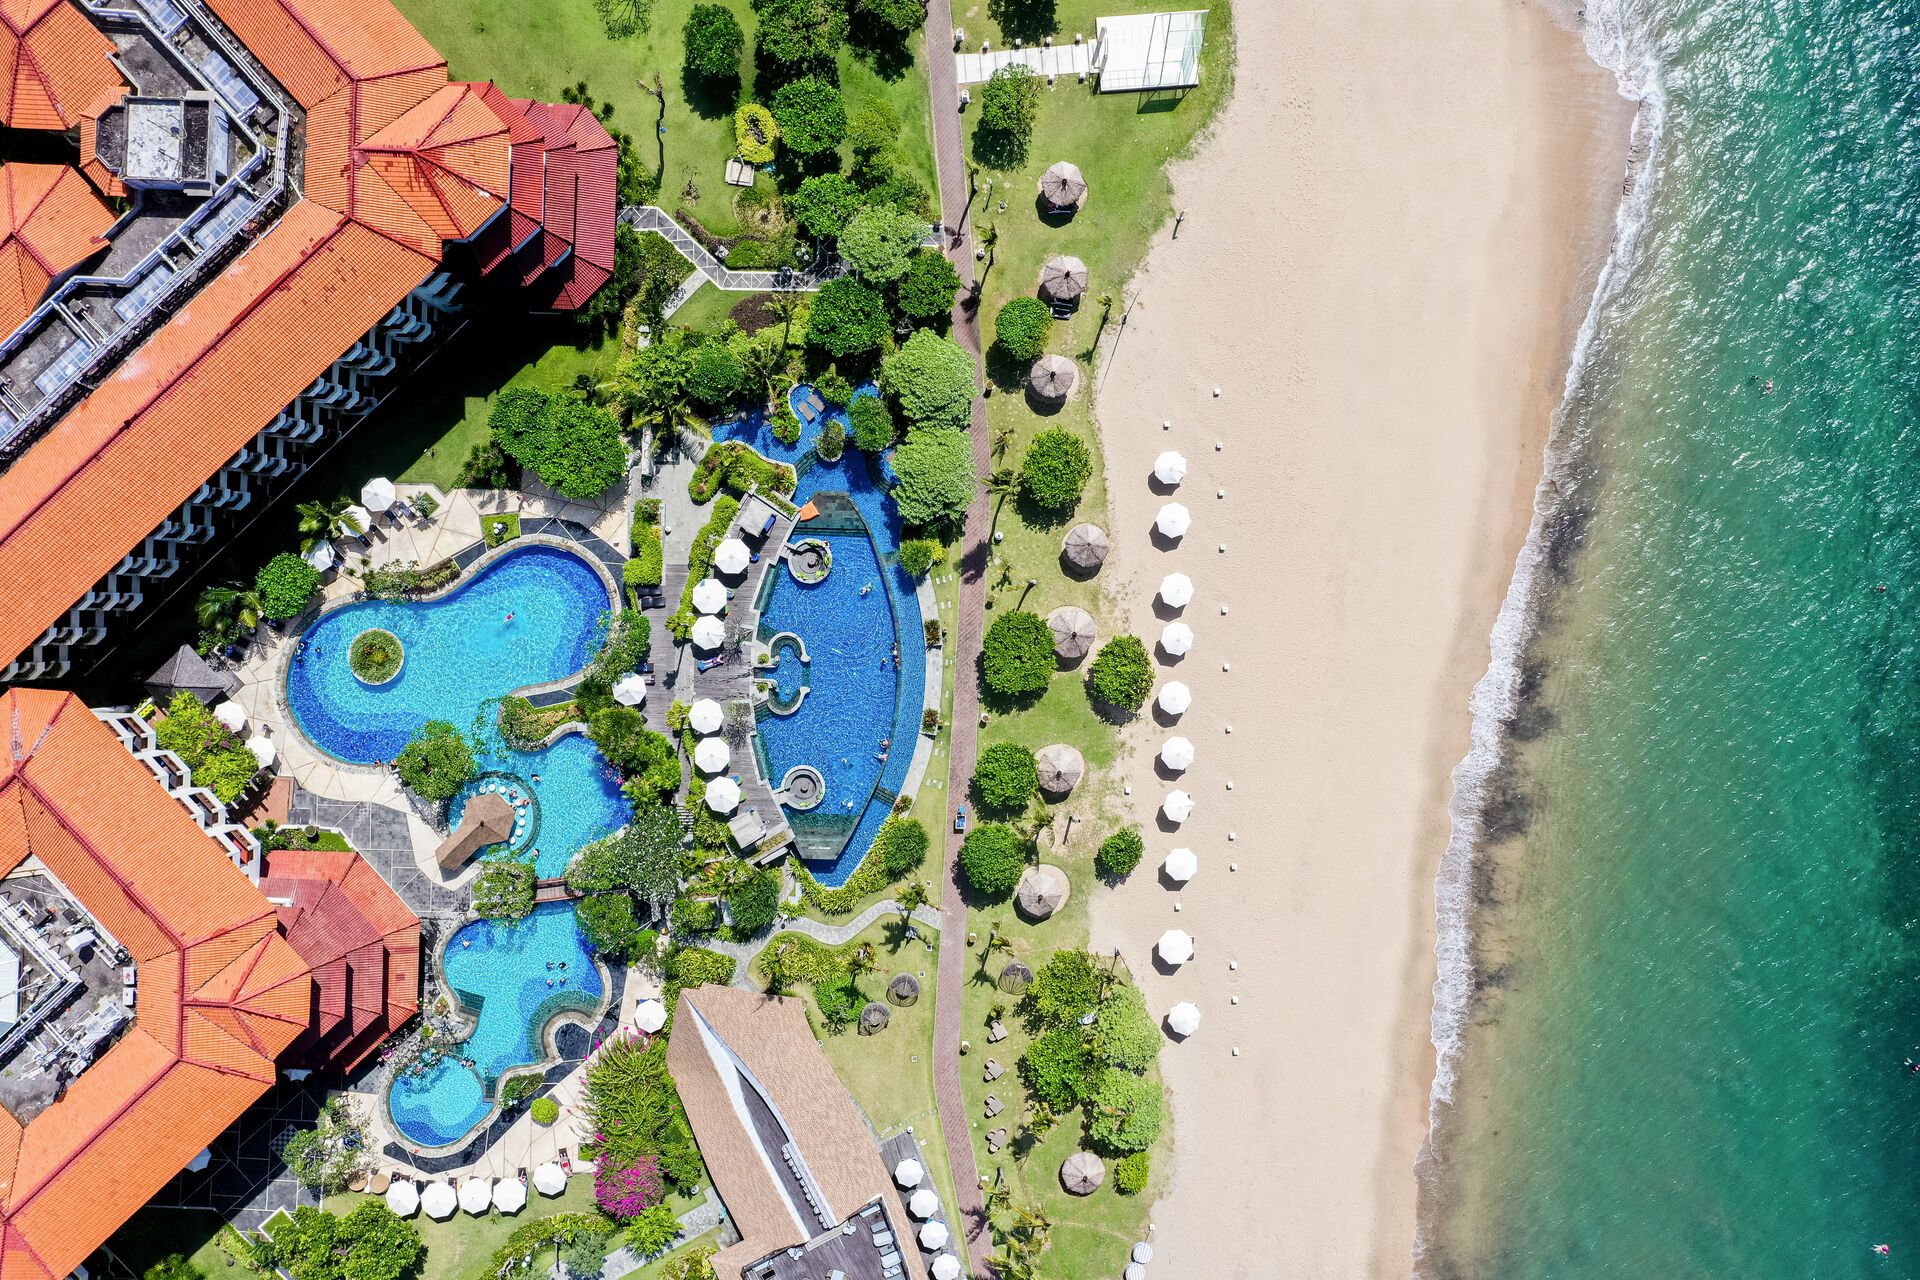 Indonésie - Bali - Hotel Grand Mirage Beach Resort Bali 4* - Ch. De Luxe Garden PDJ